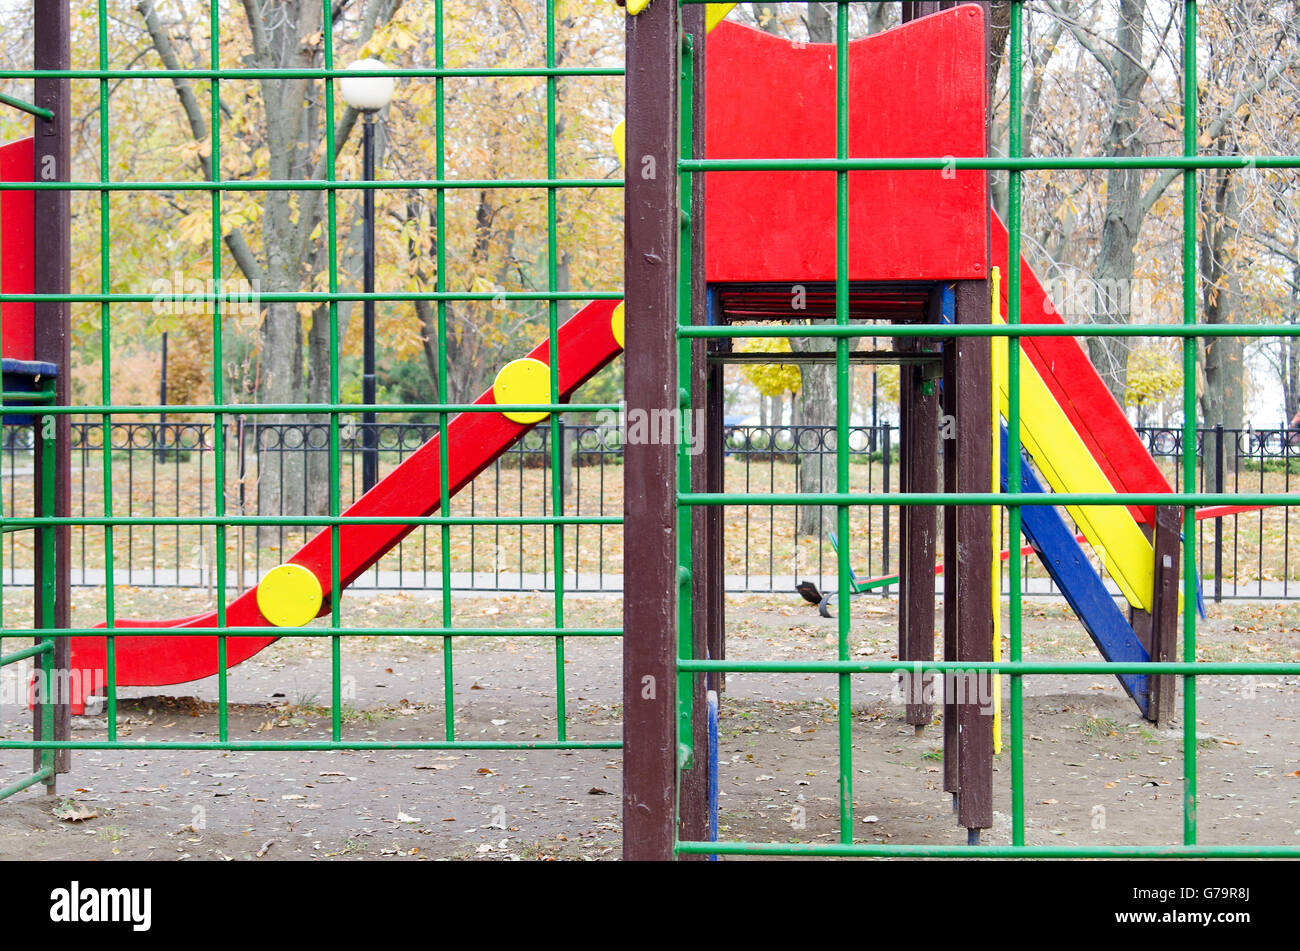 Vide aire de jeux pour enfants et d'une diapositive dans le parc dans le contexte d'arbre en automne avec les feuilles mortes. Selective focus wit Banque D'Images